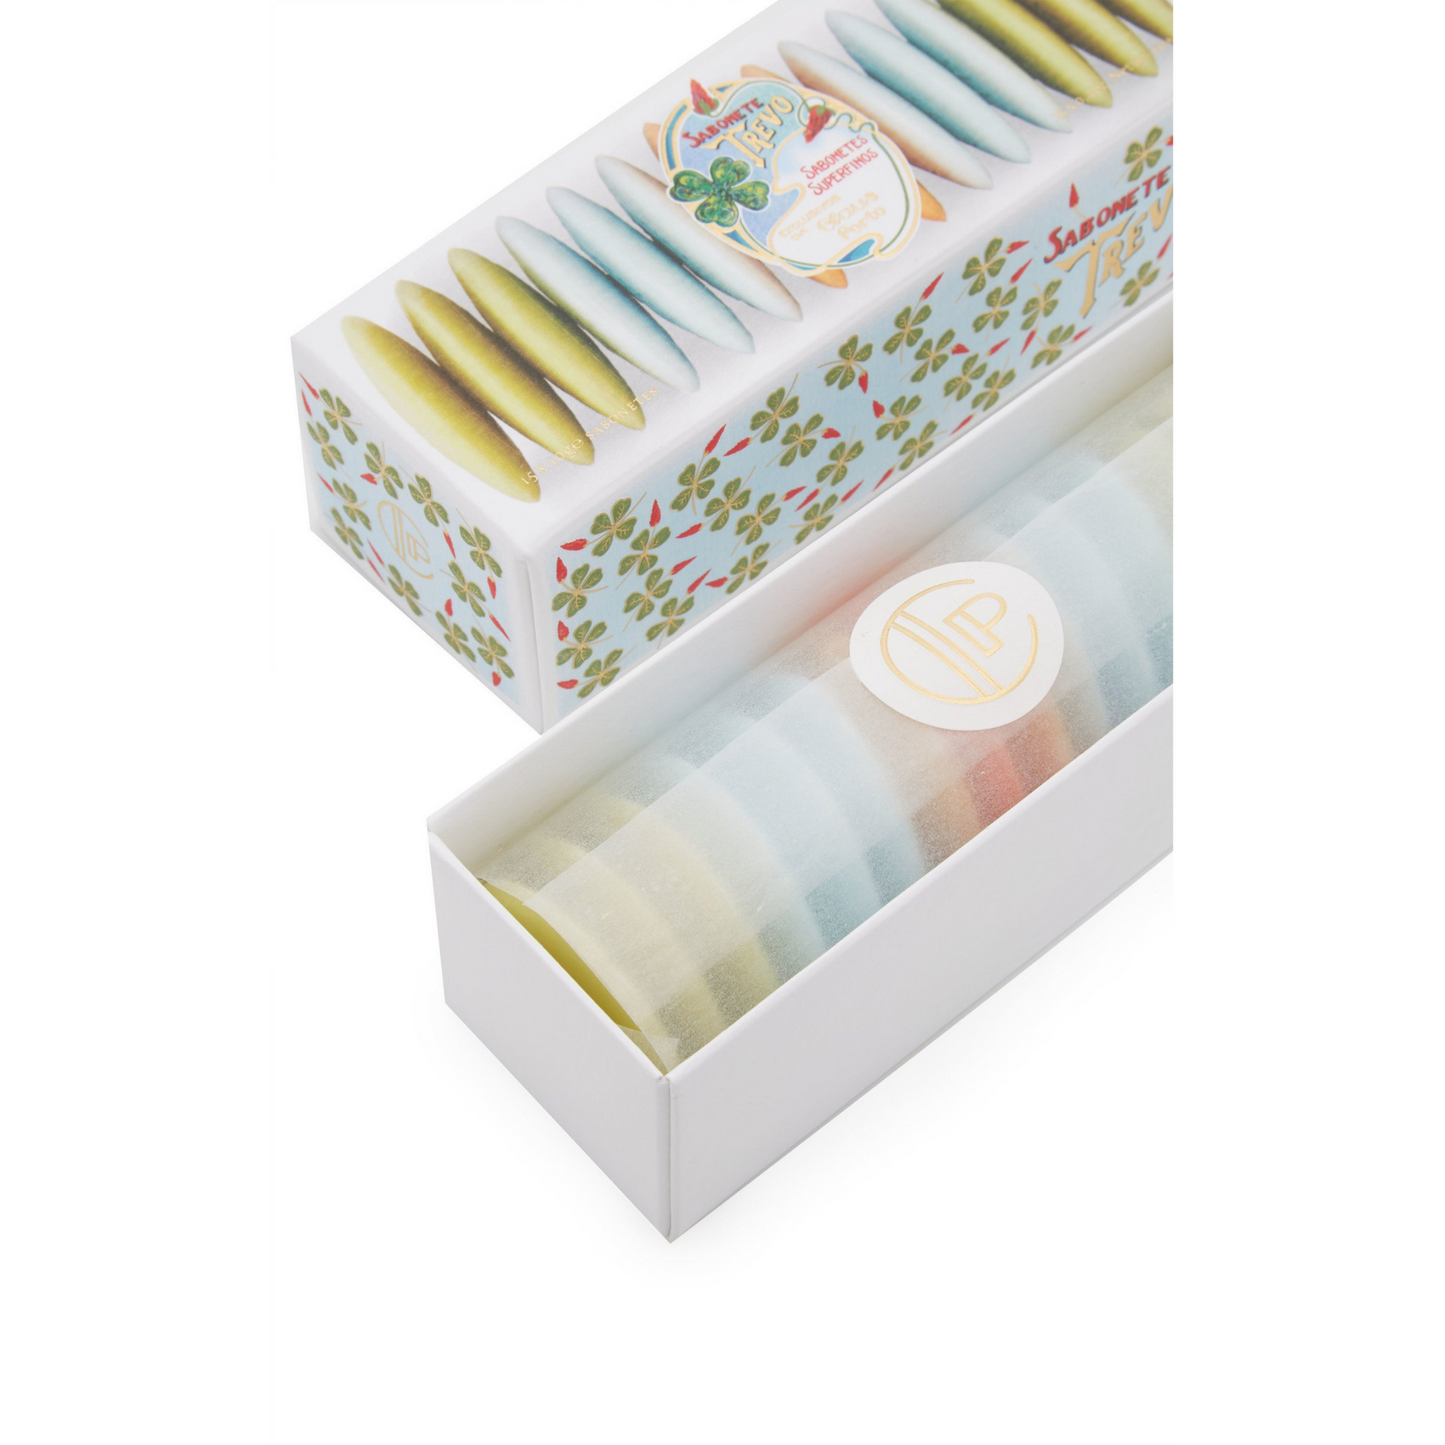 Claus Porto Trevo Guest Soap Box (15 x 10 g) #10085018